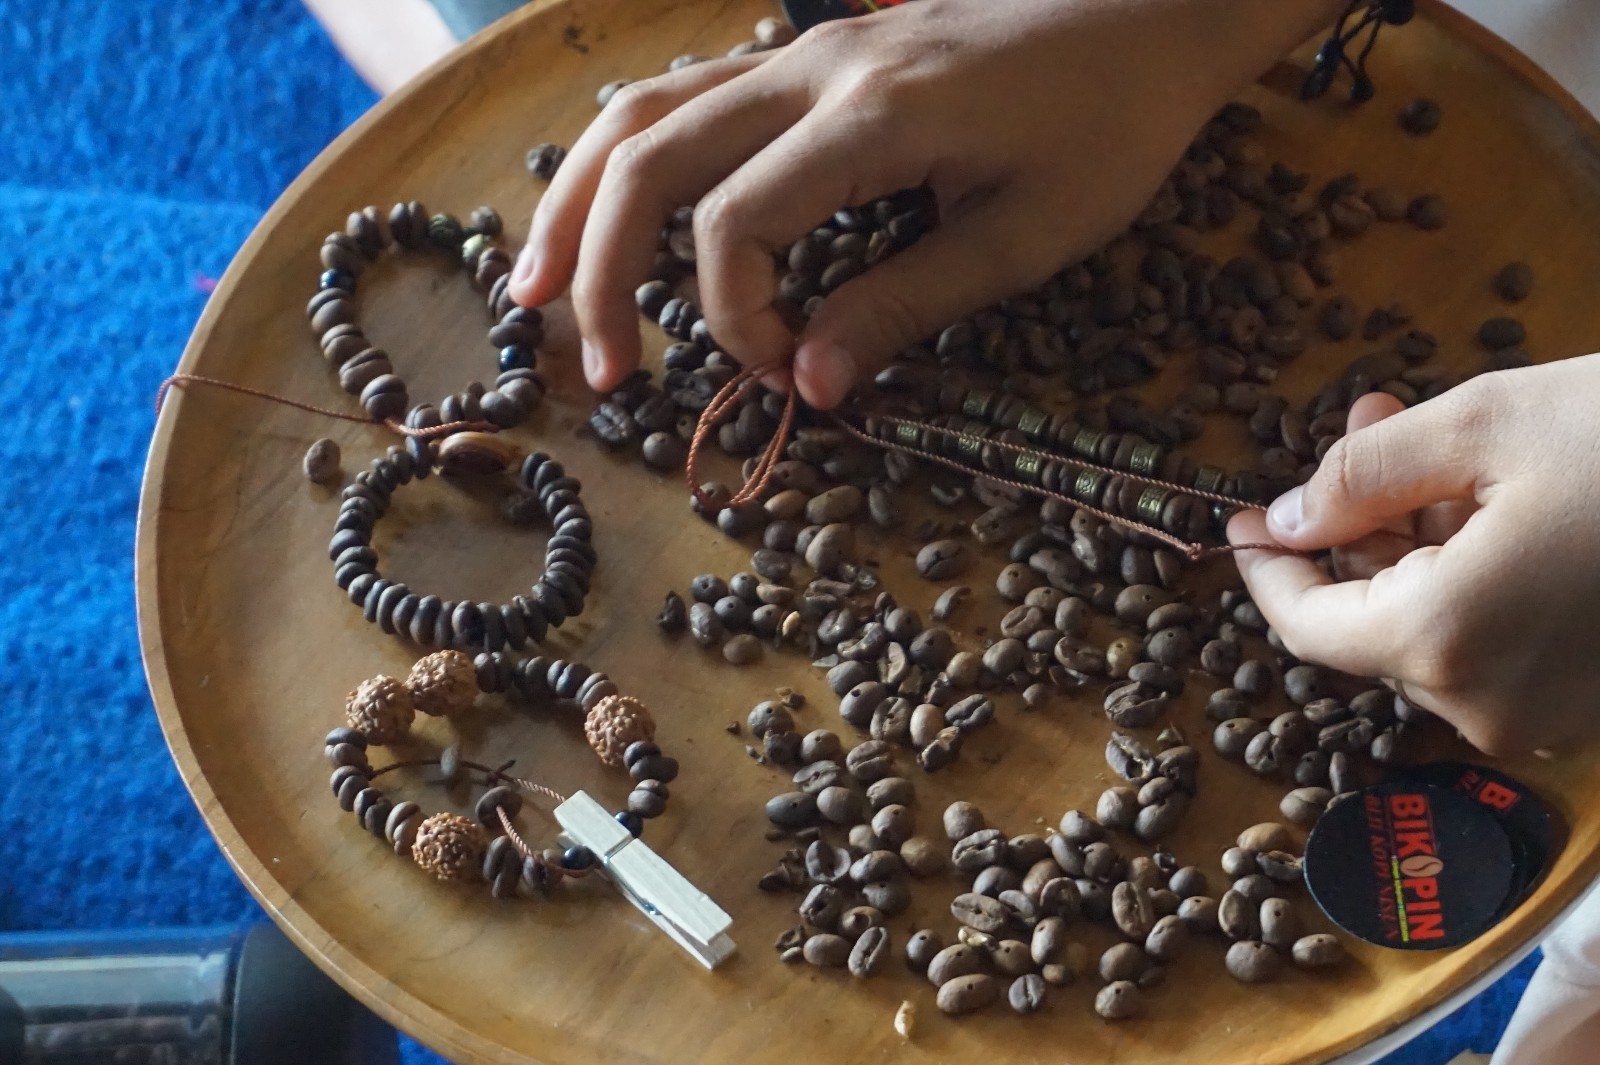 Proses pembuatan gelang dari biji kopi di Desa Singolatren Kecamatan Singojuruh Banyuwangi / Travelingyuk / Ismiraa